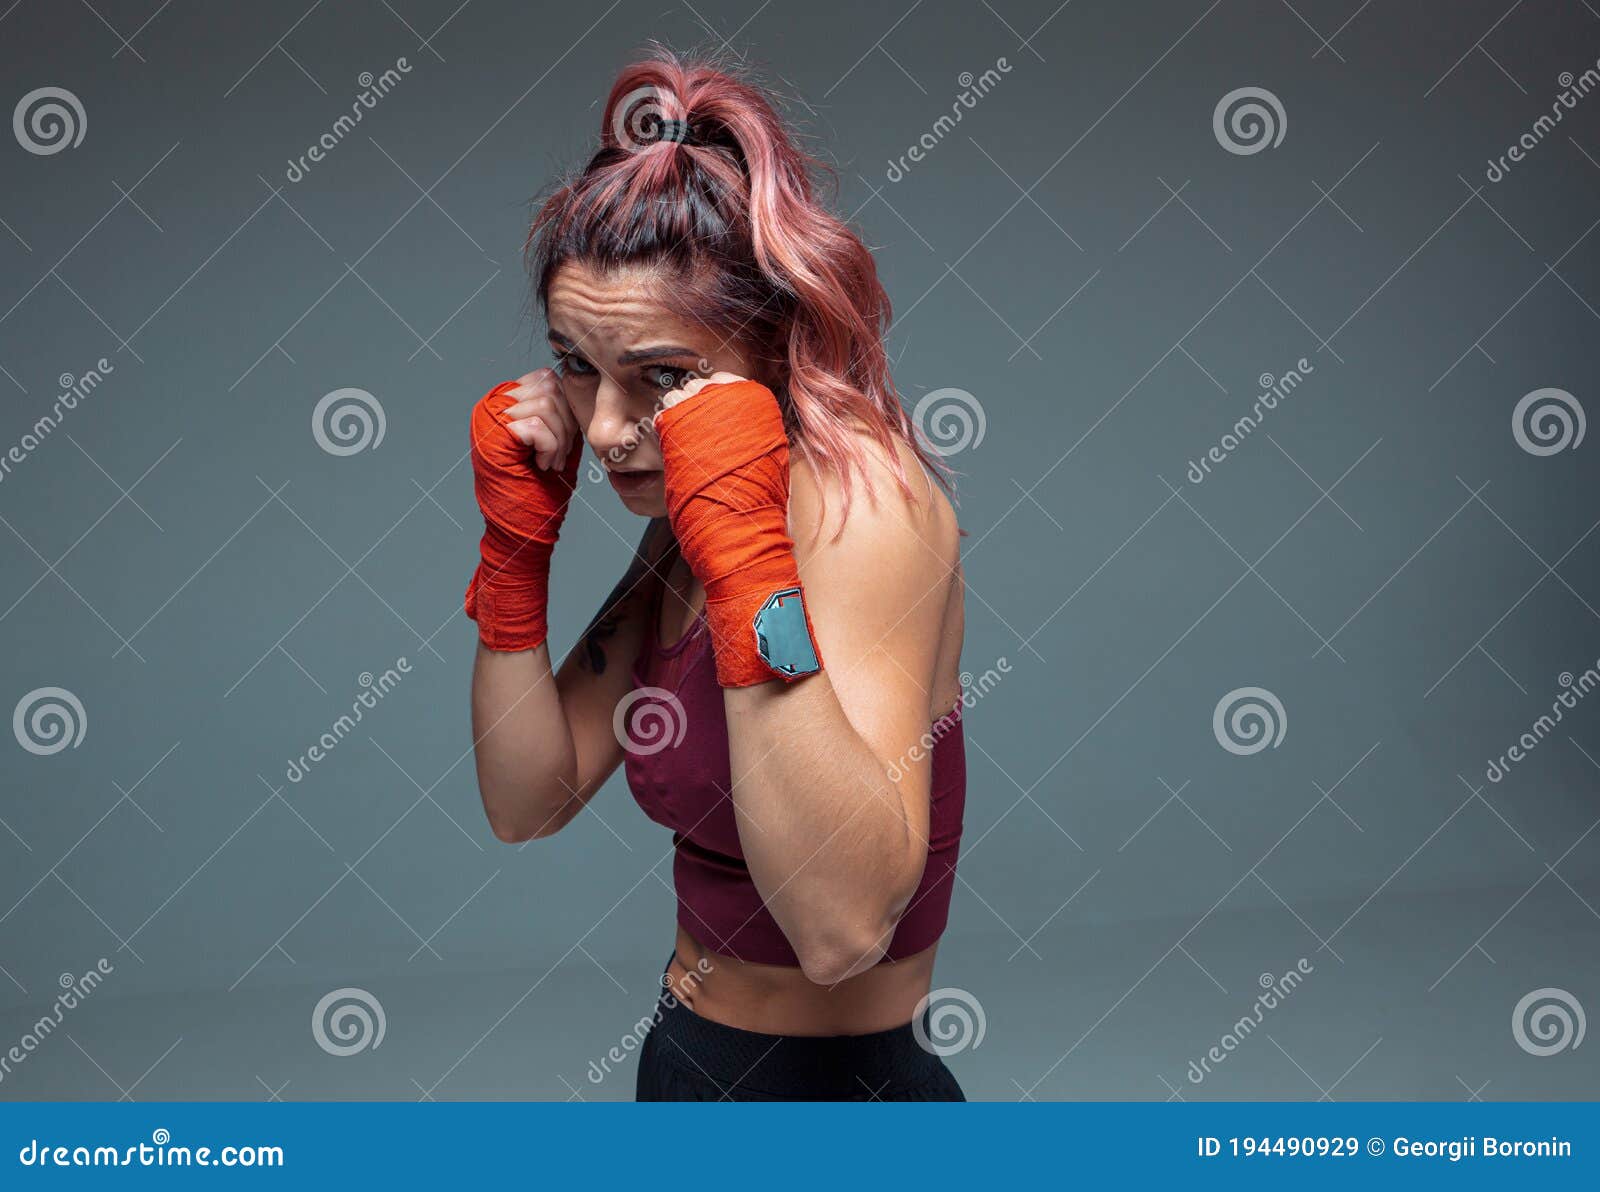 Retrato De Una Mujer Luchadora En Vendas De Boxeo Parada En Un Estudio  Aislado De Fondo Gris Imagen de archivo - Imagen de atractivo, muscular:  194490929